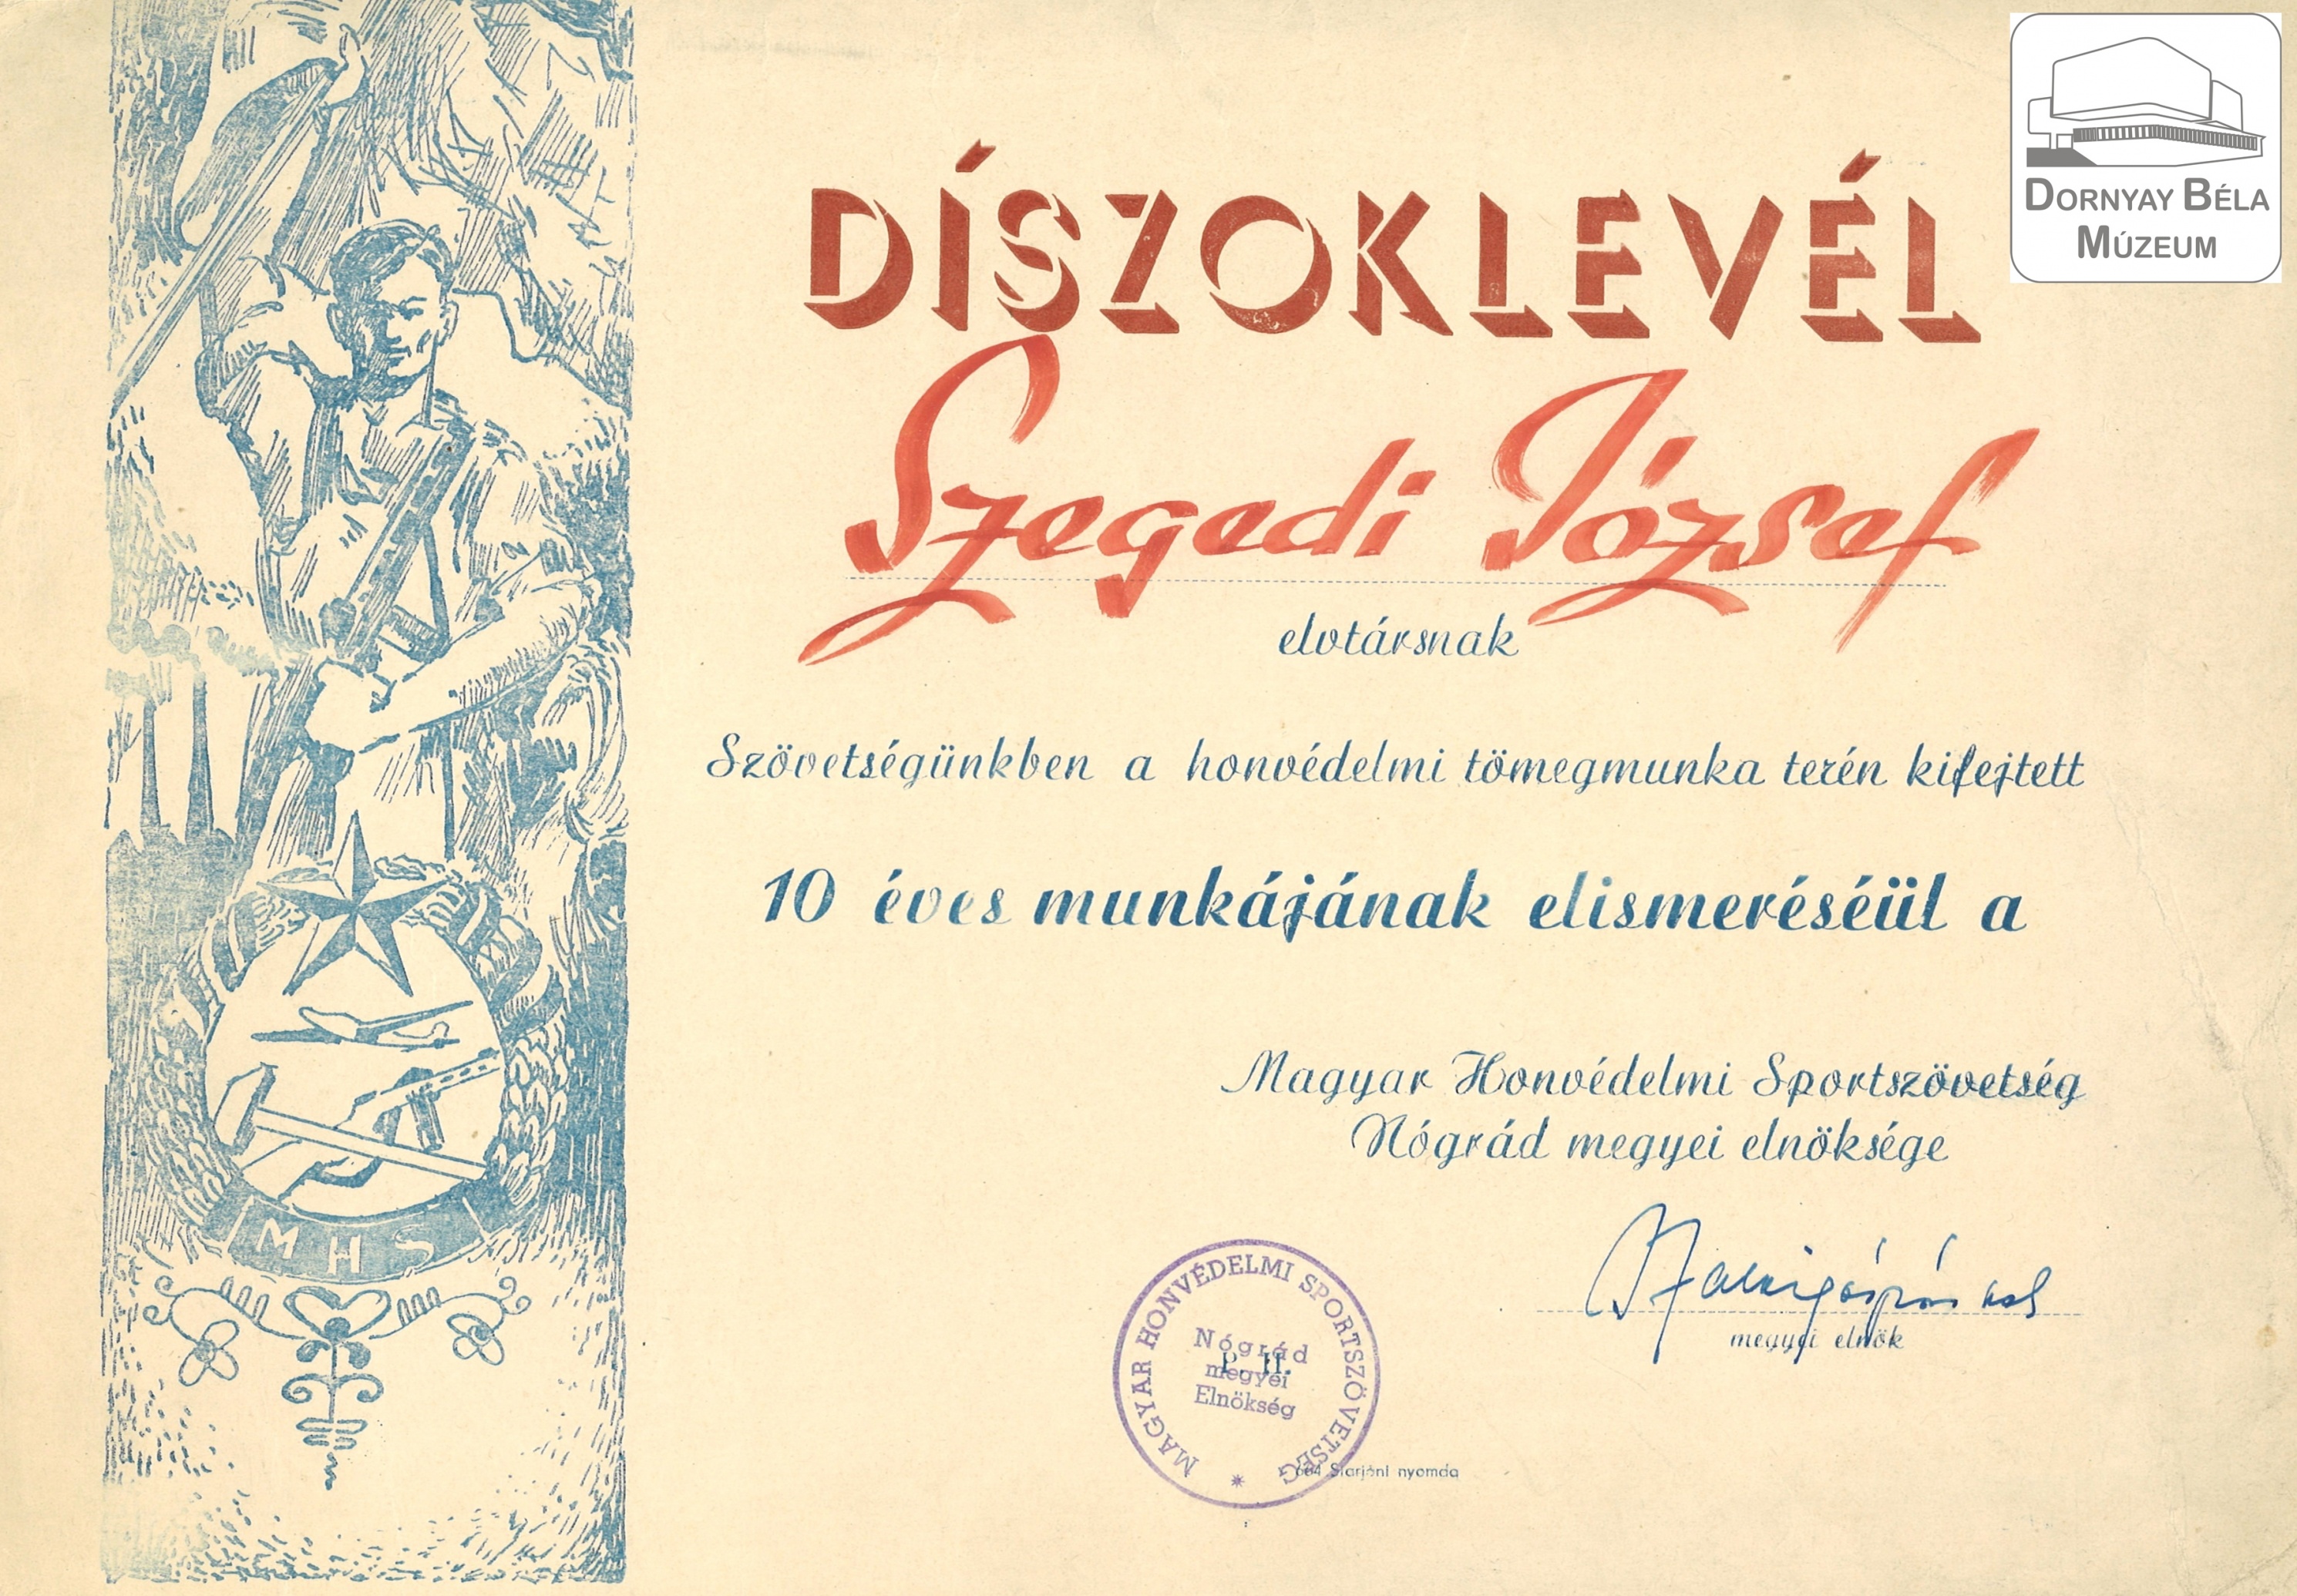 Szegedi József honvédelmi díszoklevele (Dornyay Béla Múzeum, Salgótarján CC BY-NC-SA)